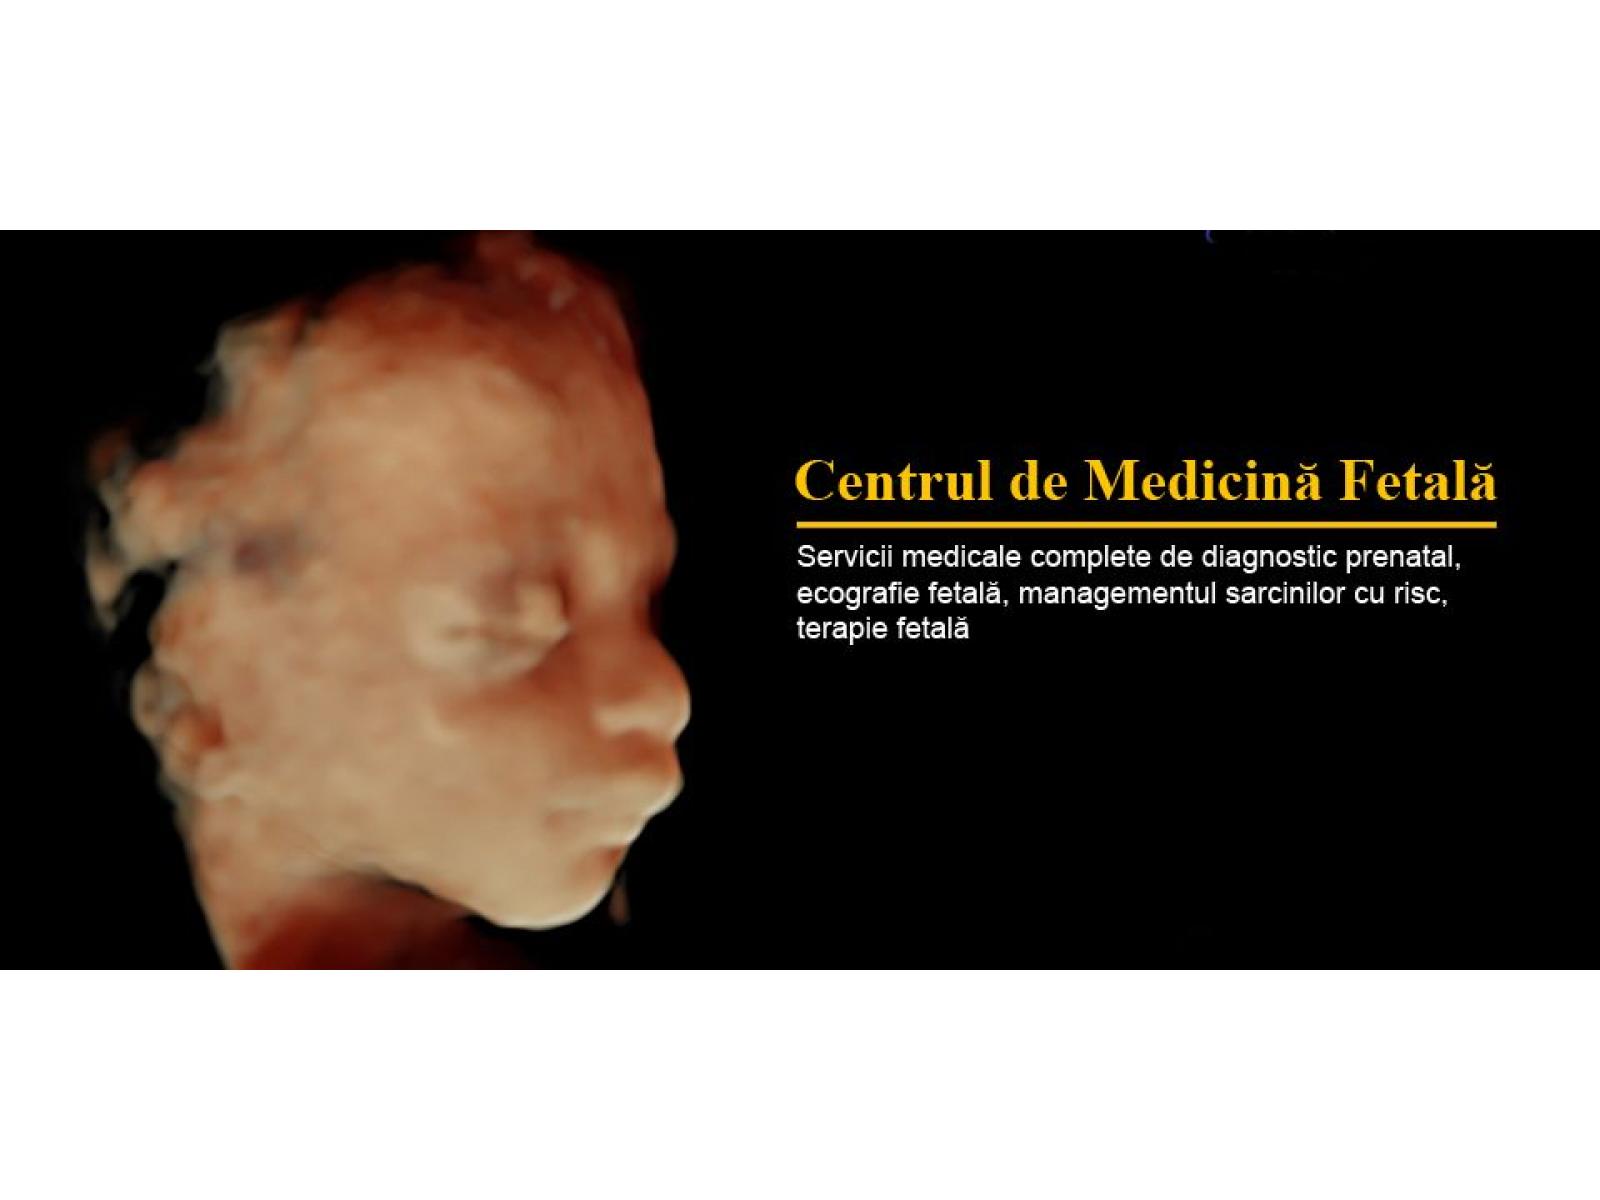 Centrul de Medicina Fetala - Dr. Muresan - medicina-fetala.jpg